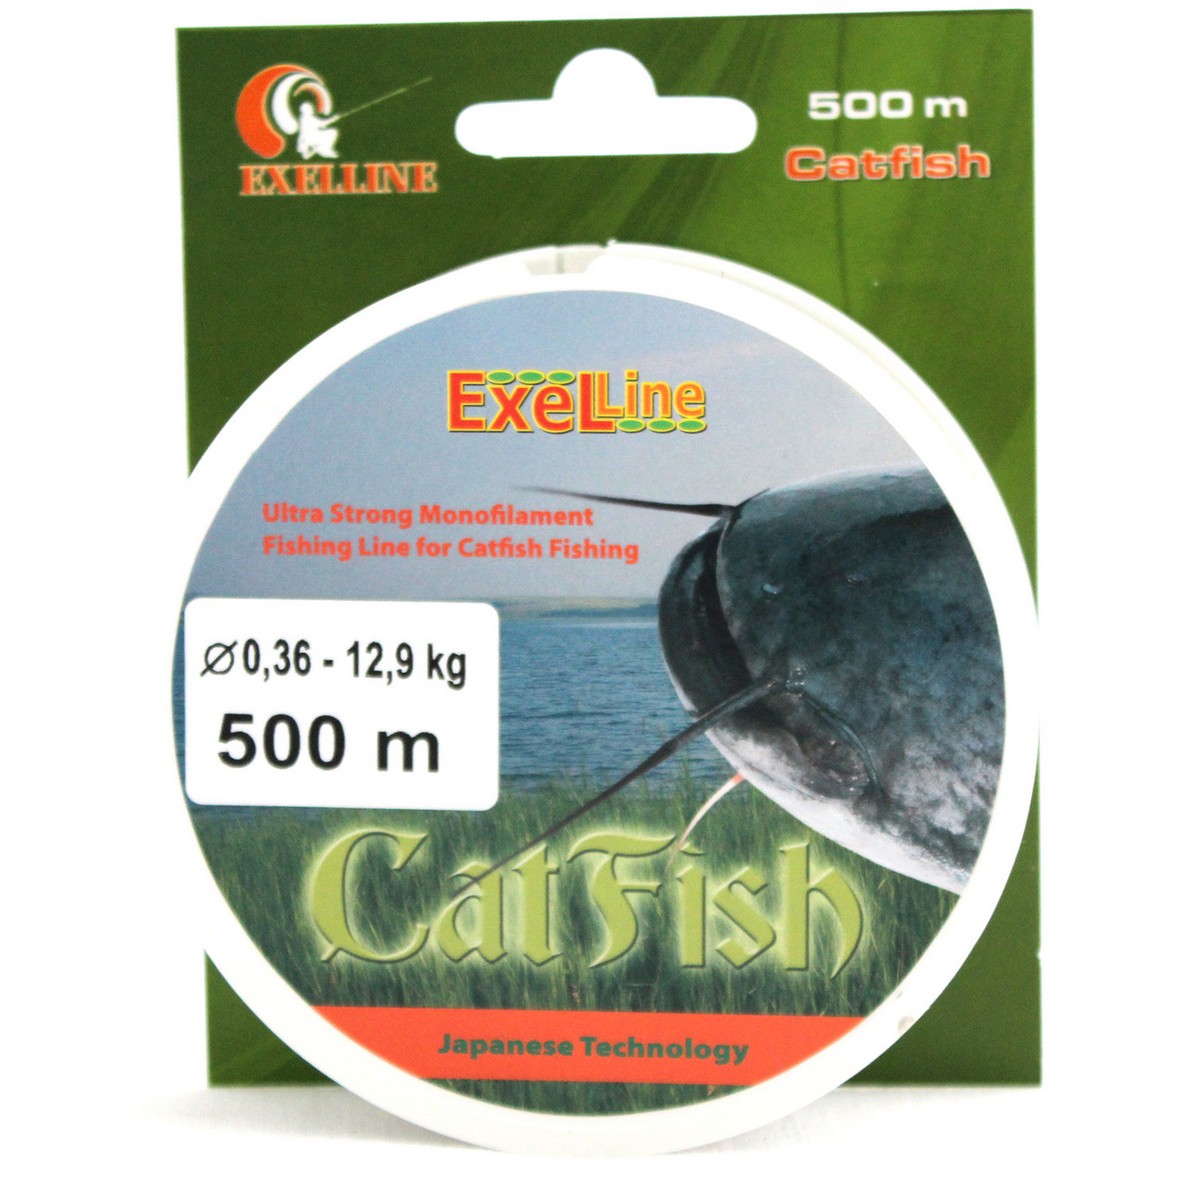 Exelline Cat Fish-0